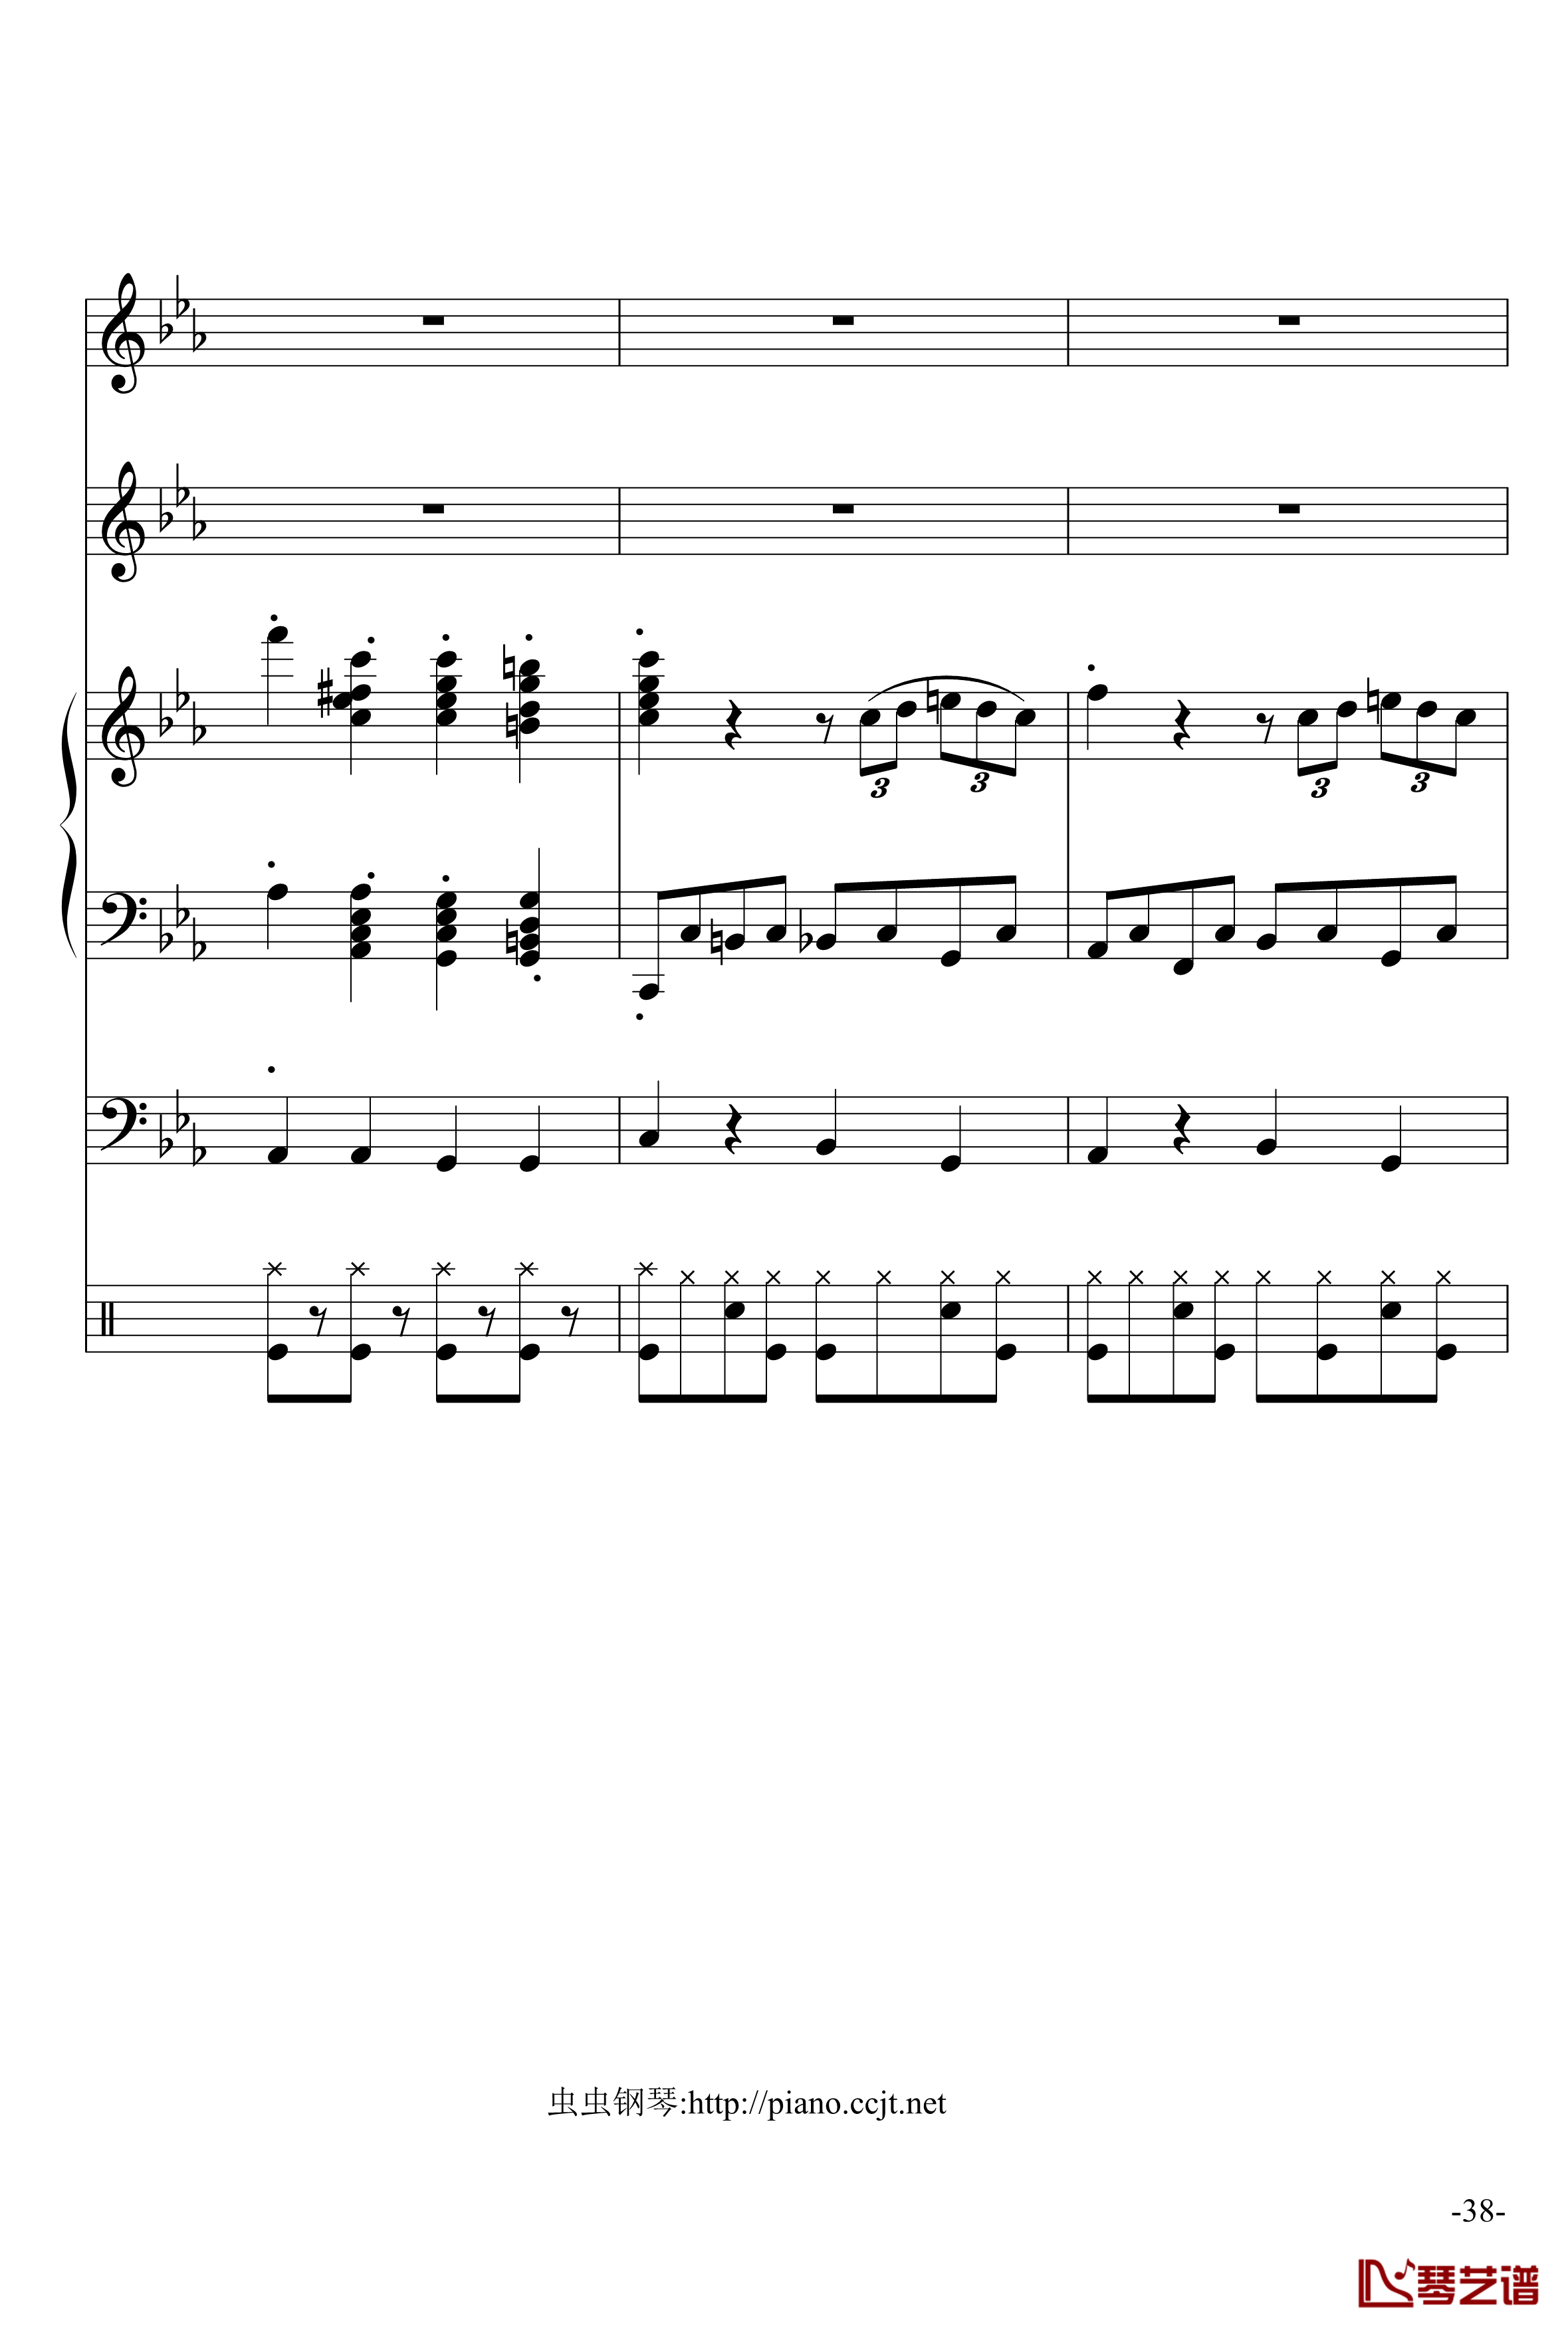 悲怆奏鸣曲钢琴谱-加小乐队-贝多芬-beethoven38